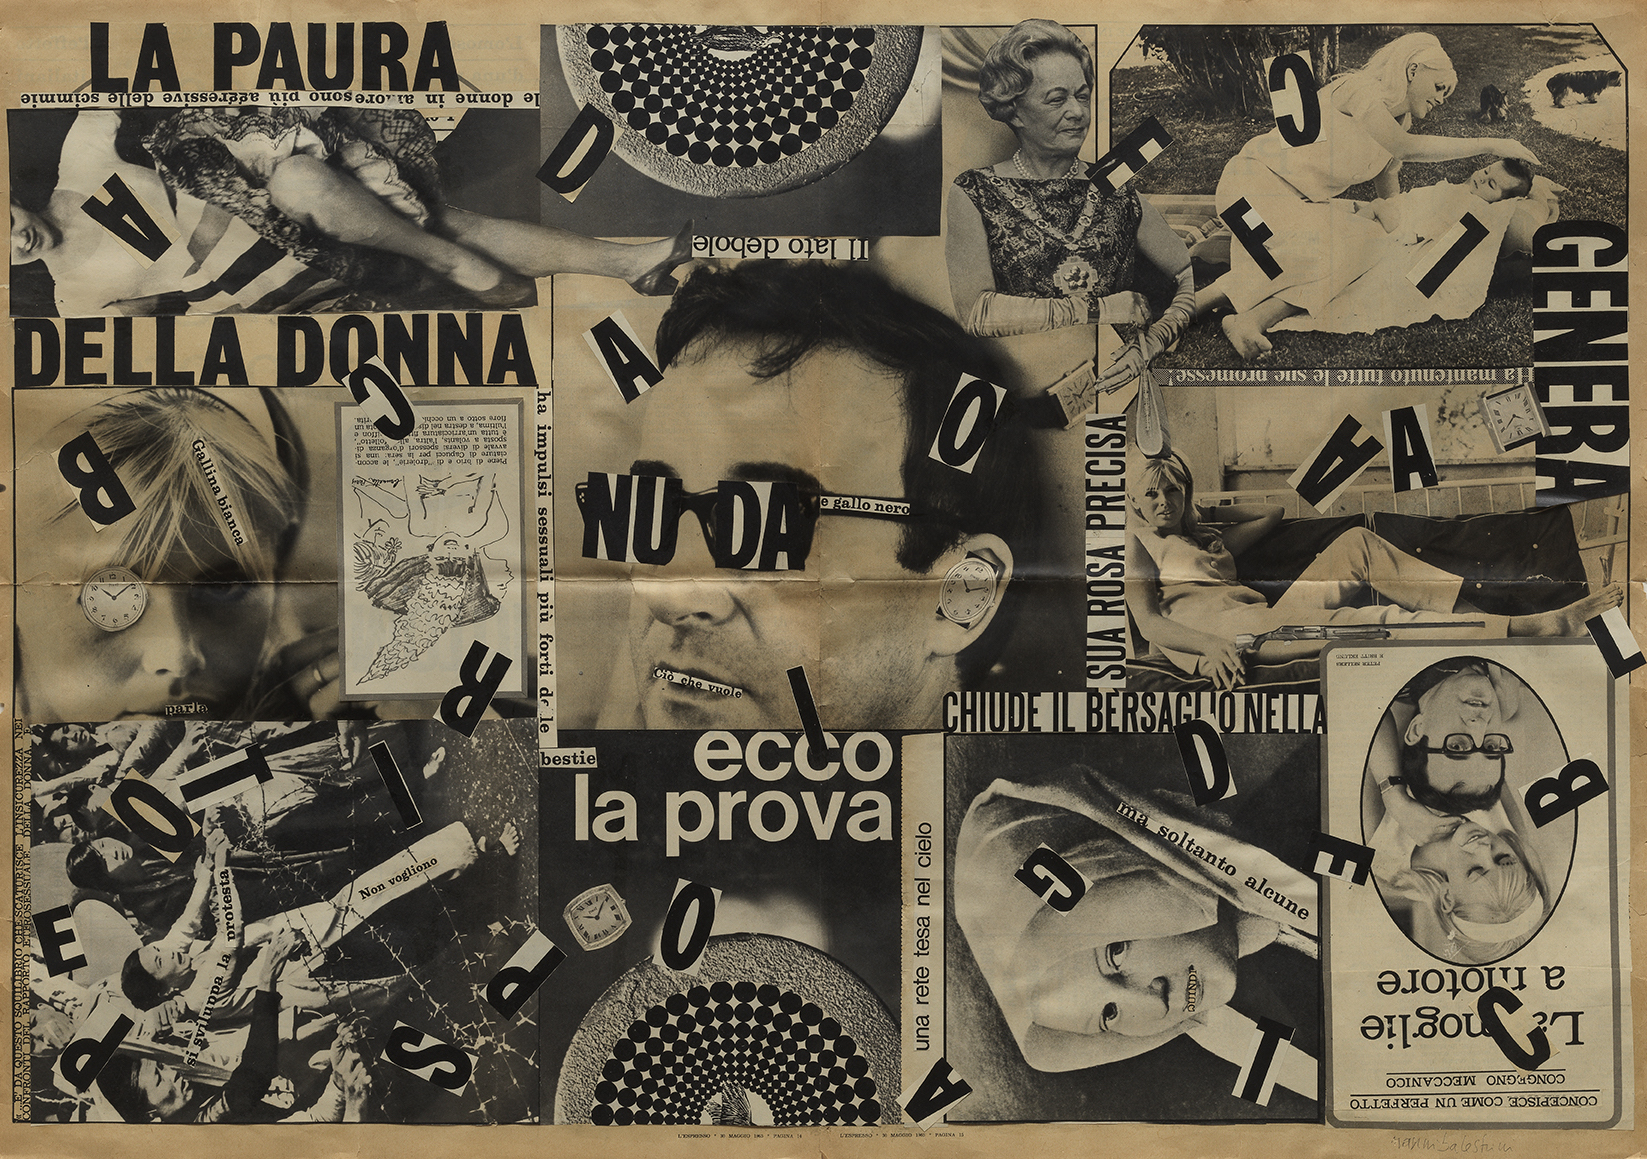 Nanni Balestrini, 'La Paura della donna' (Fear of Women), 1965. Collage on paper. Private collection, courtesy Galleria Michela Rizzo.